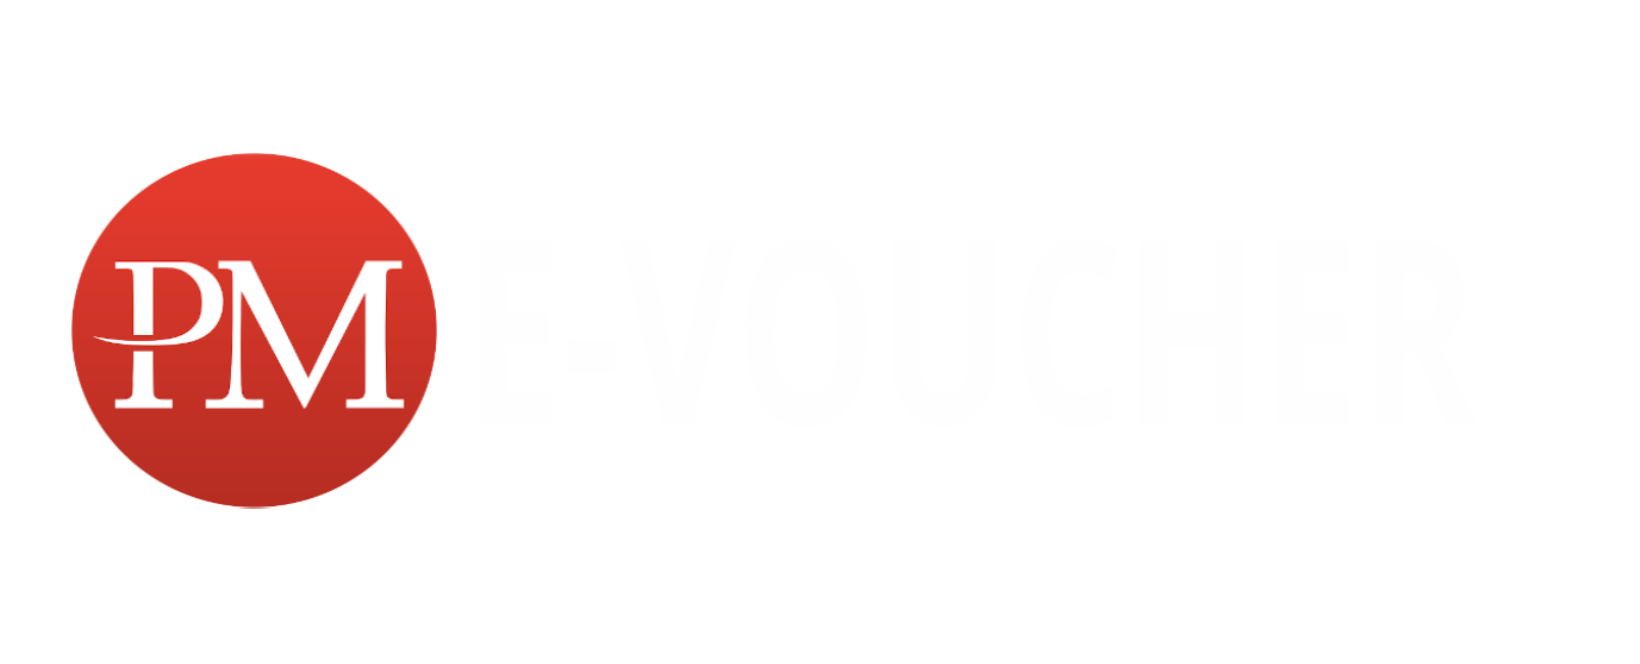 E-Voucher